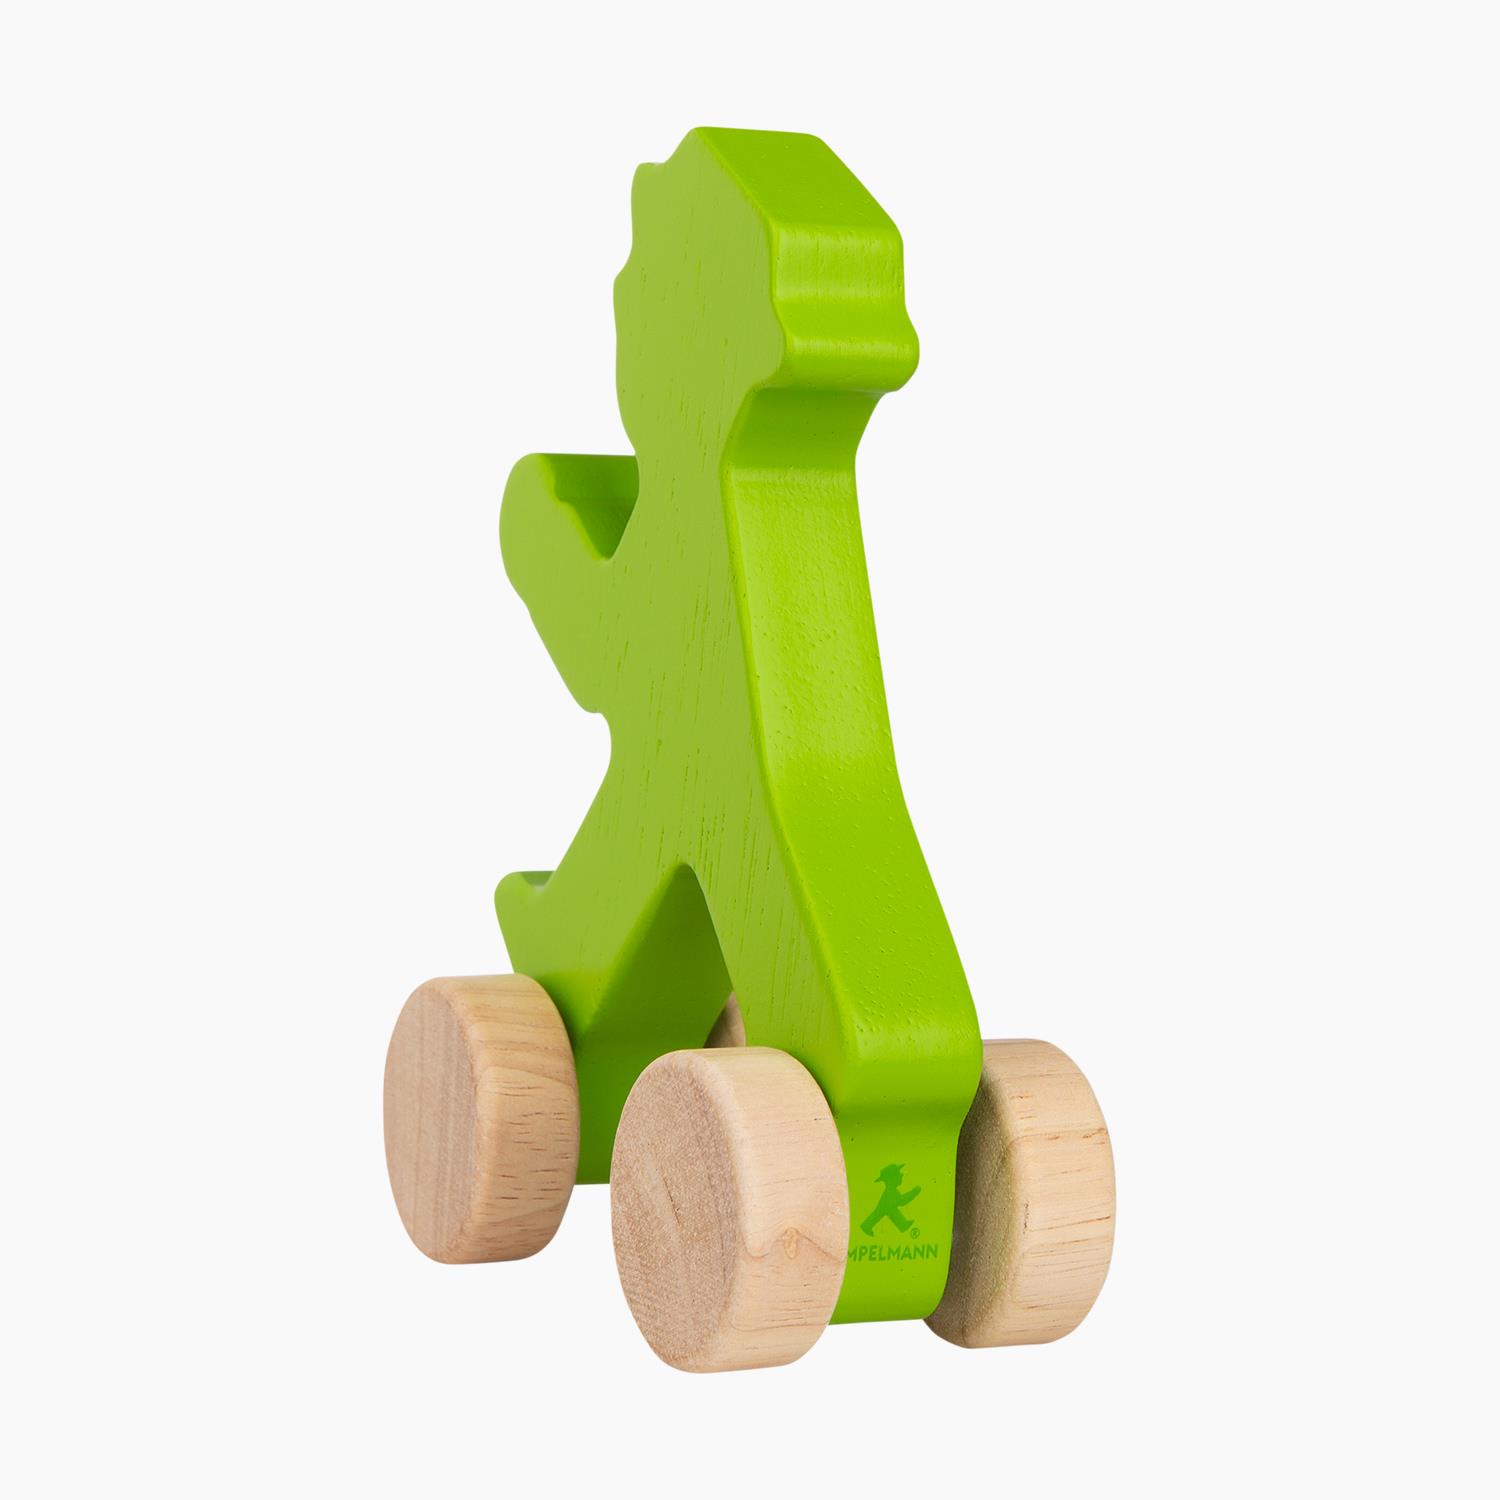 STRIPPENZIEHER / Wooden Toy